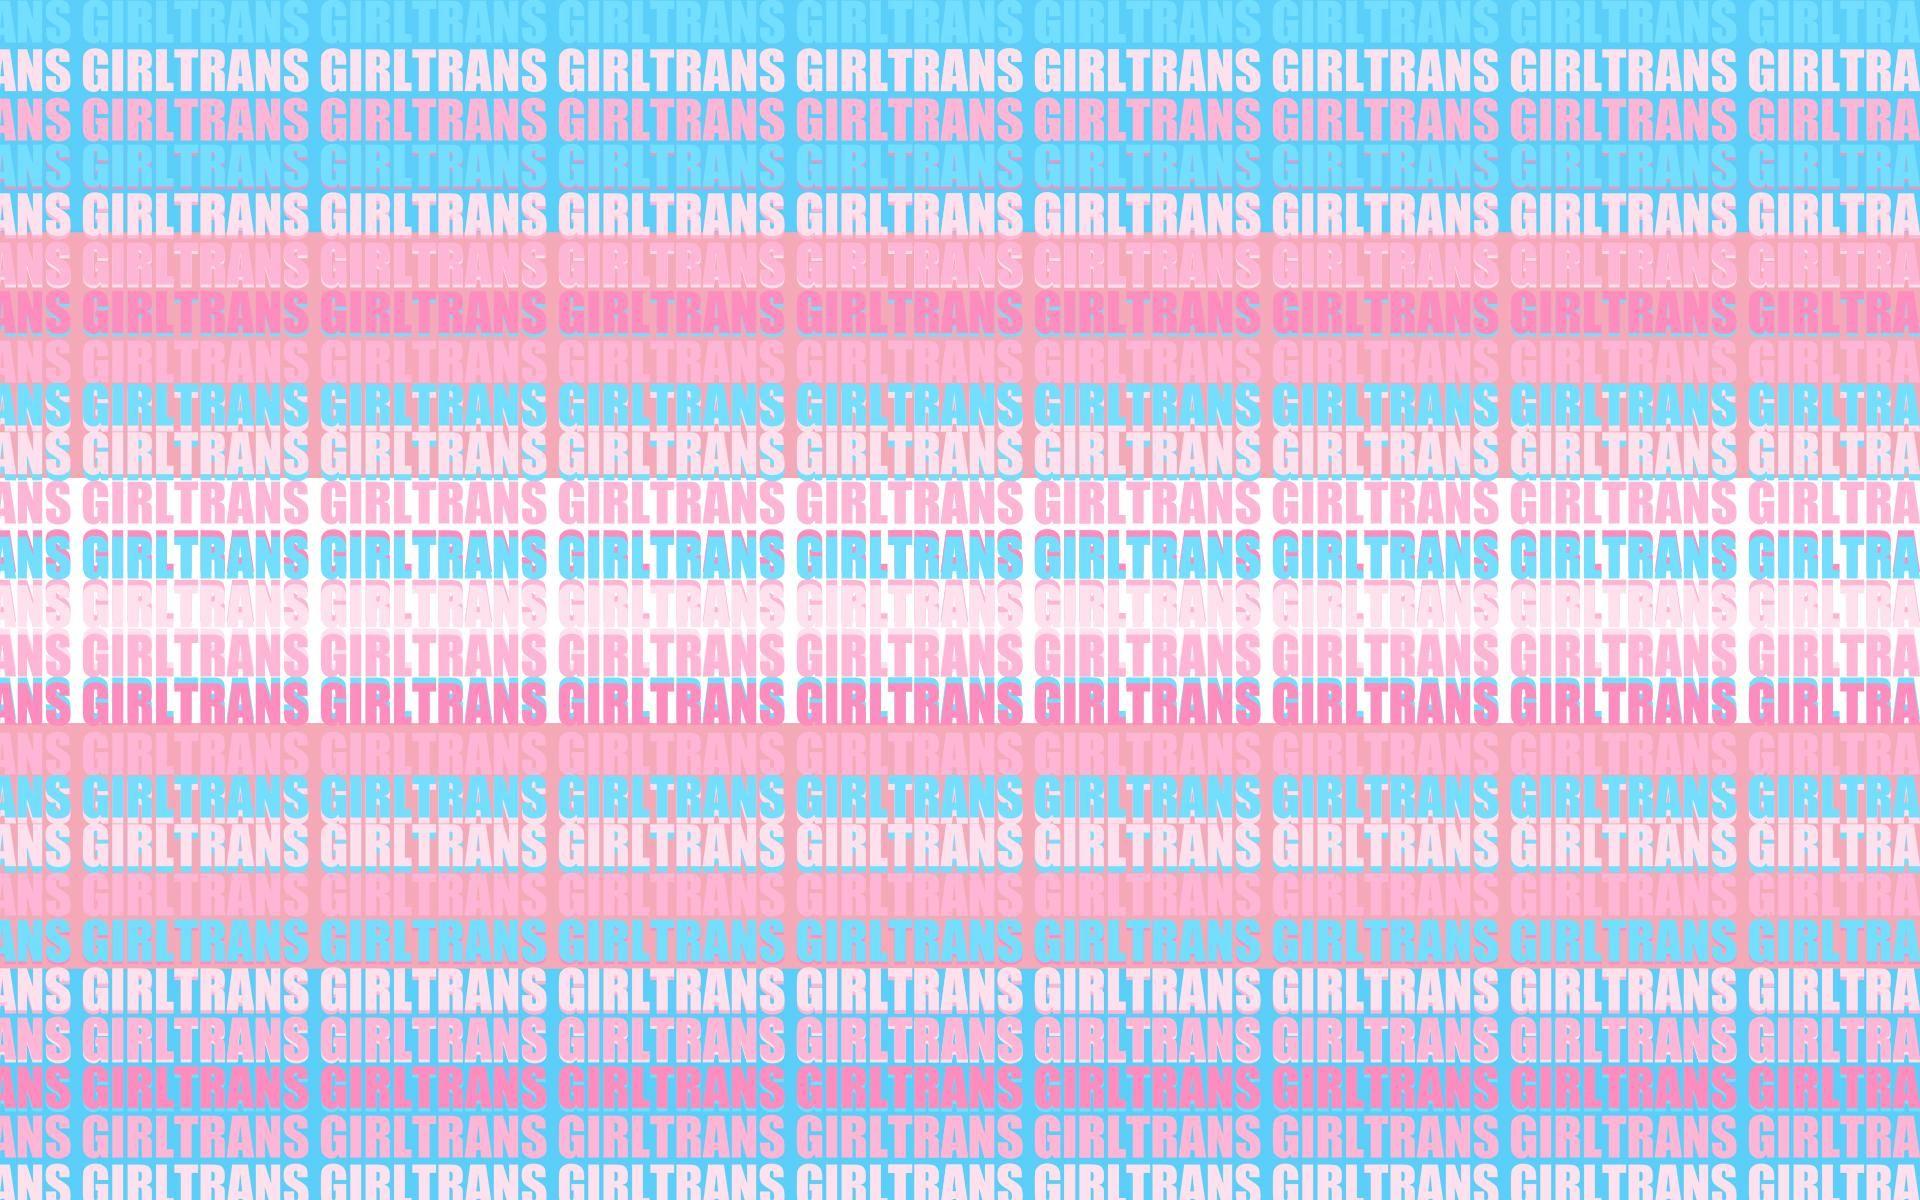 MTF Trans Pride Wallpaper. wallpaper. R wallpaper, Wallpaper, HD